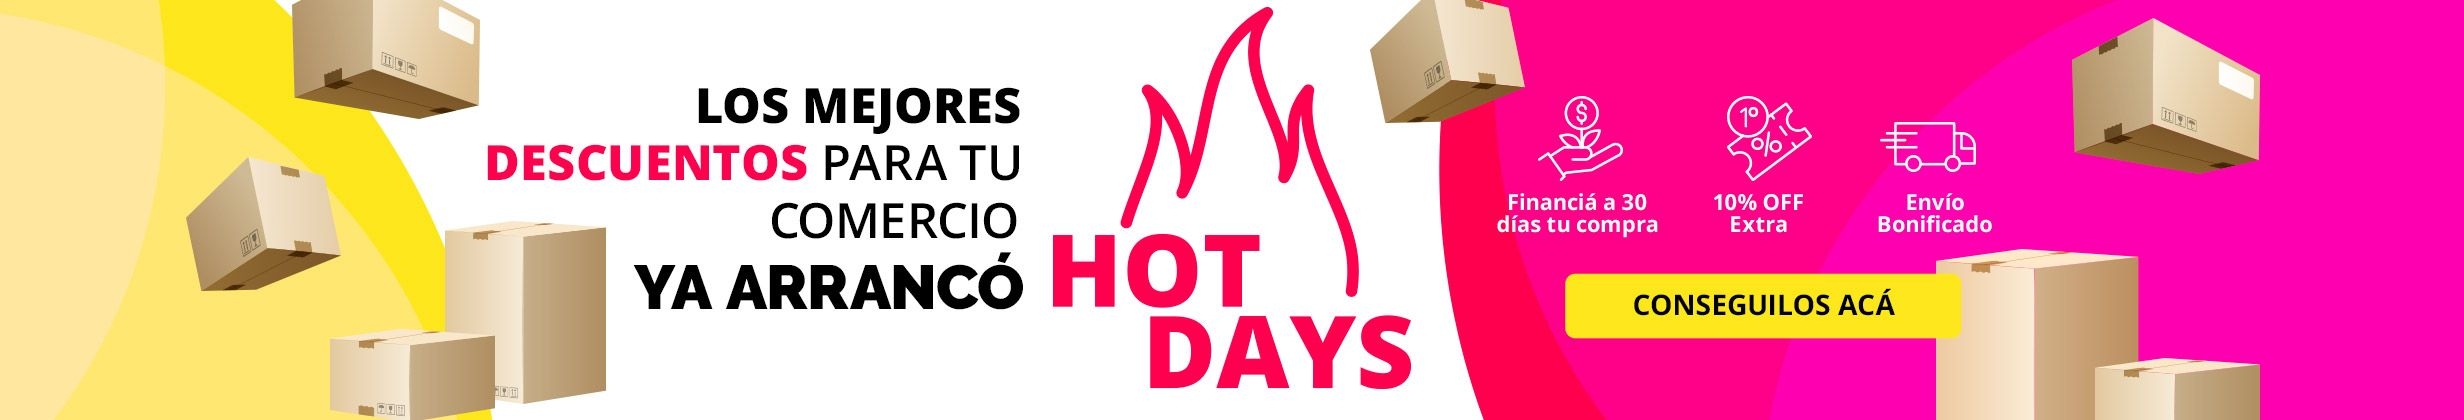 Campaña HotDays | Belleza - 29/4 al 15/5